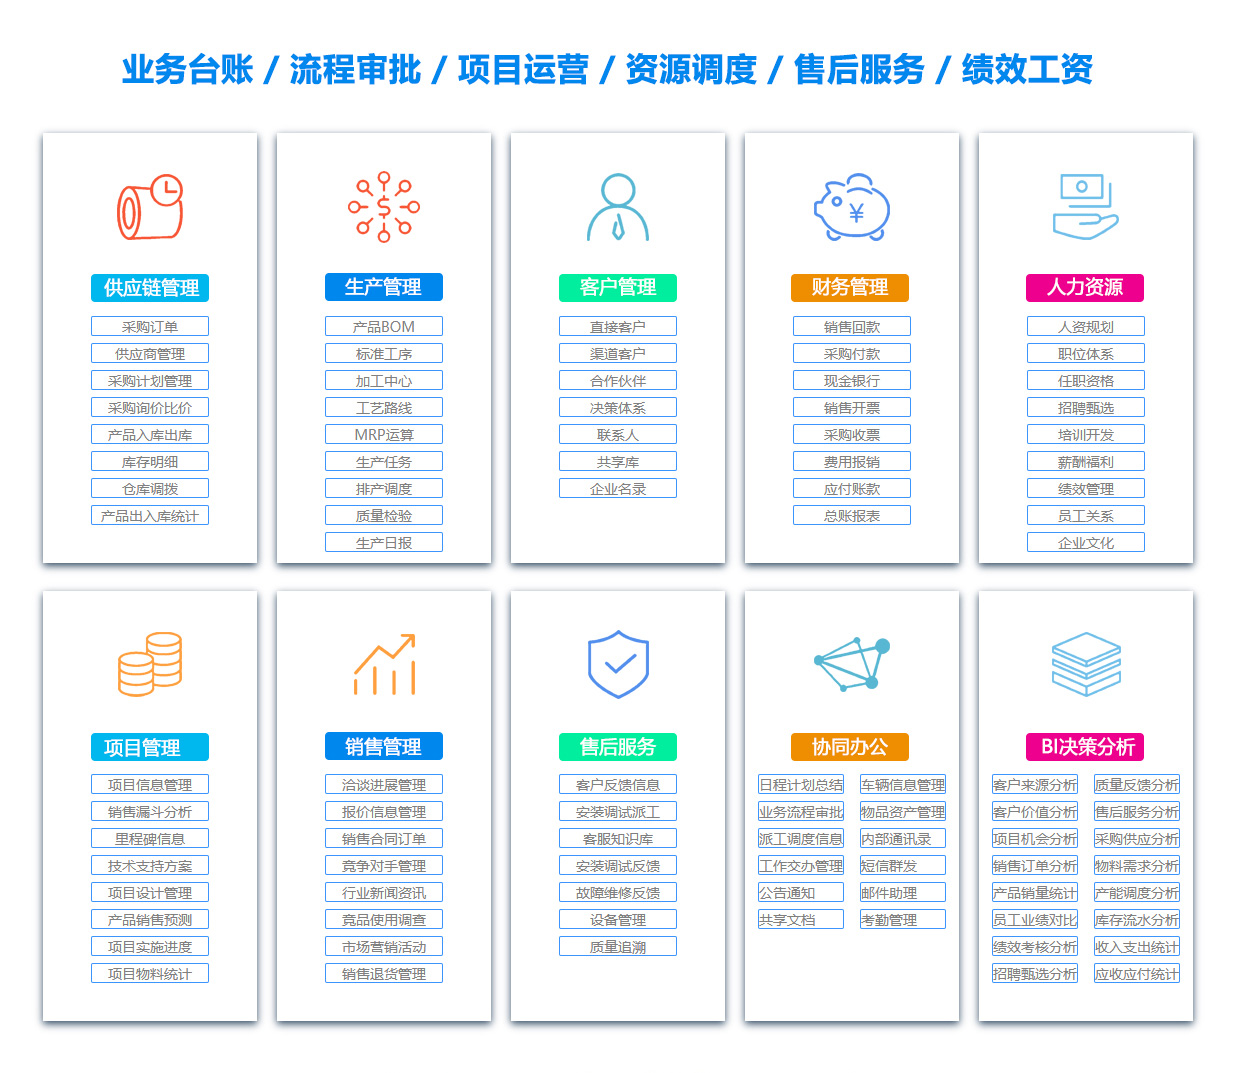 宜昌MIS:信息管理系统